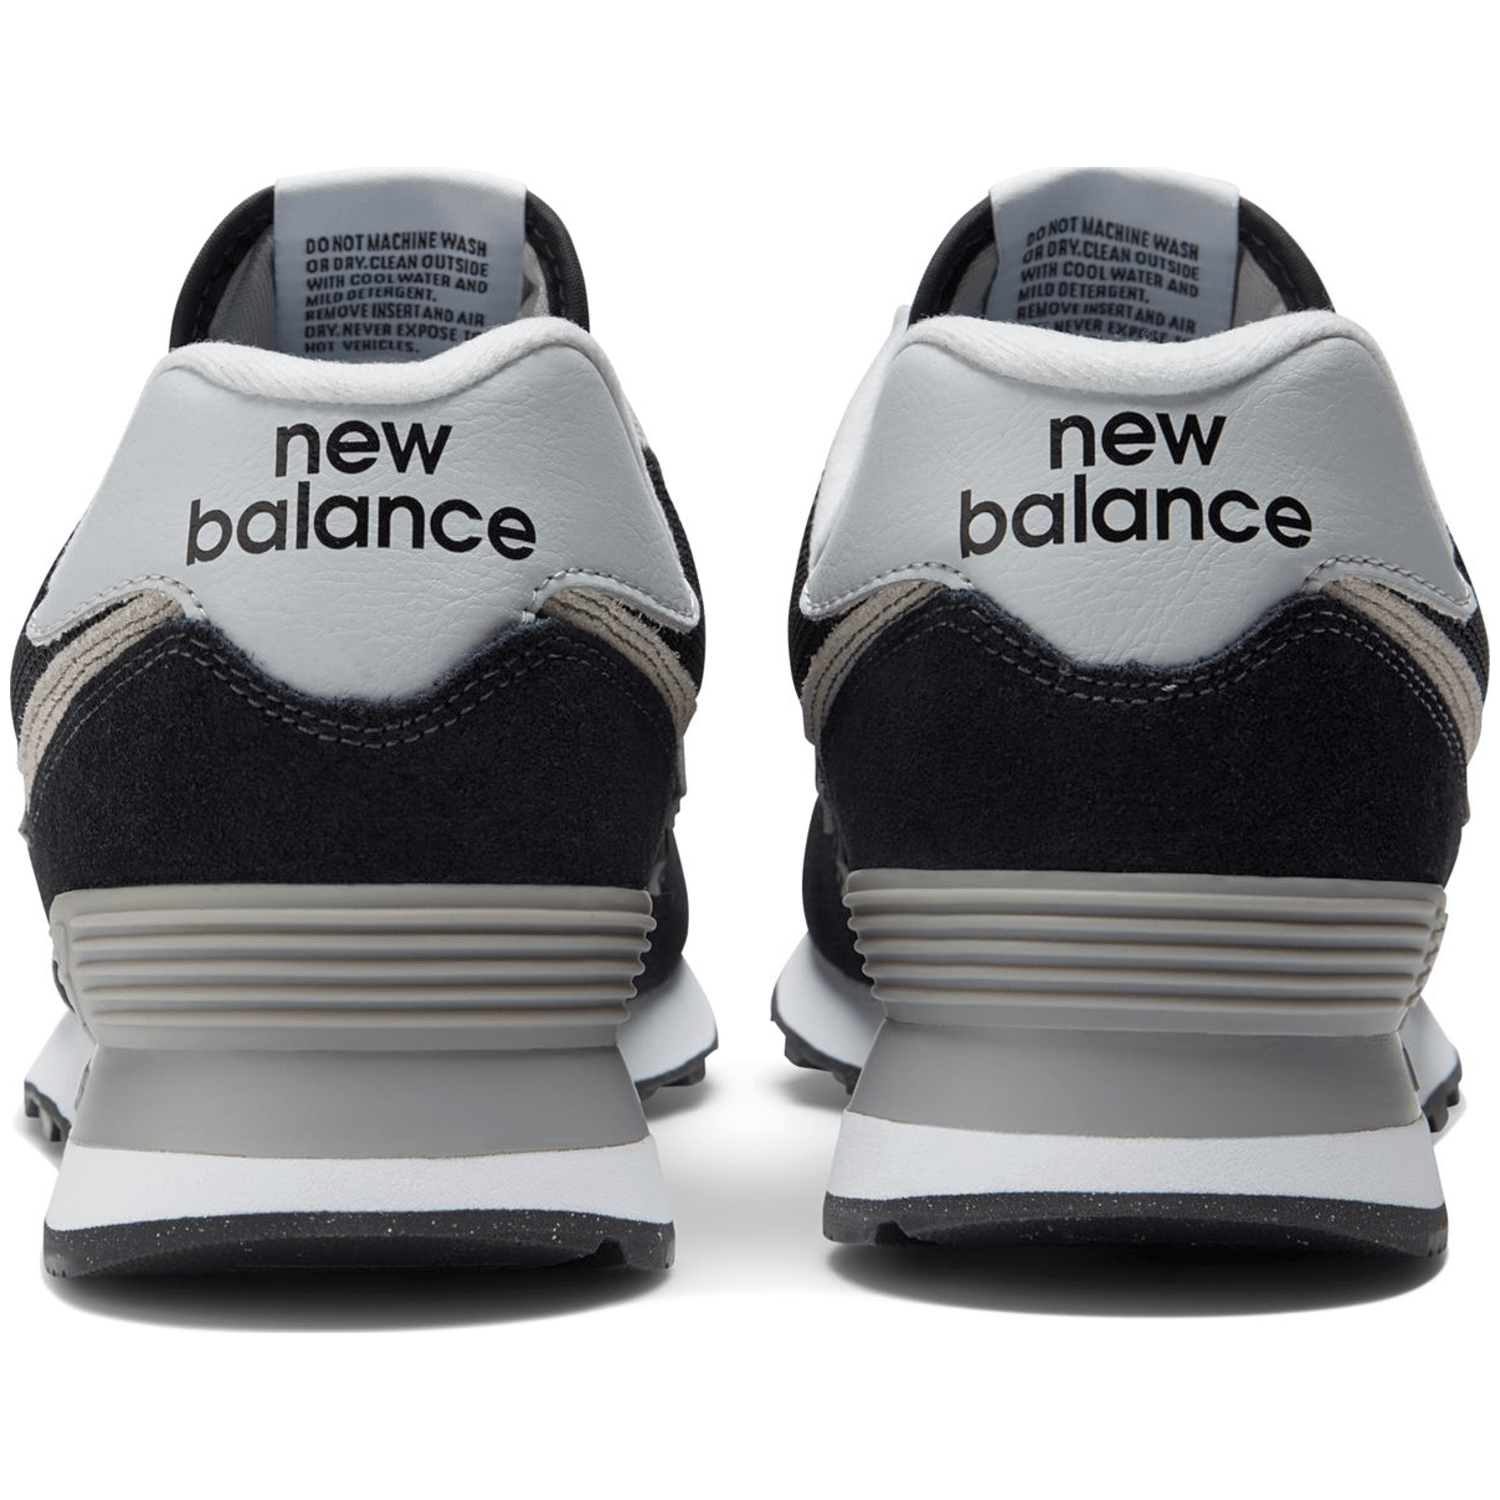 New Balance 574 Core Herren Freizeitschuhe